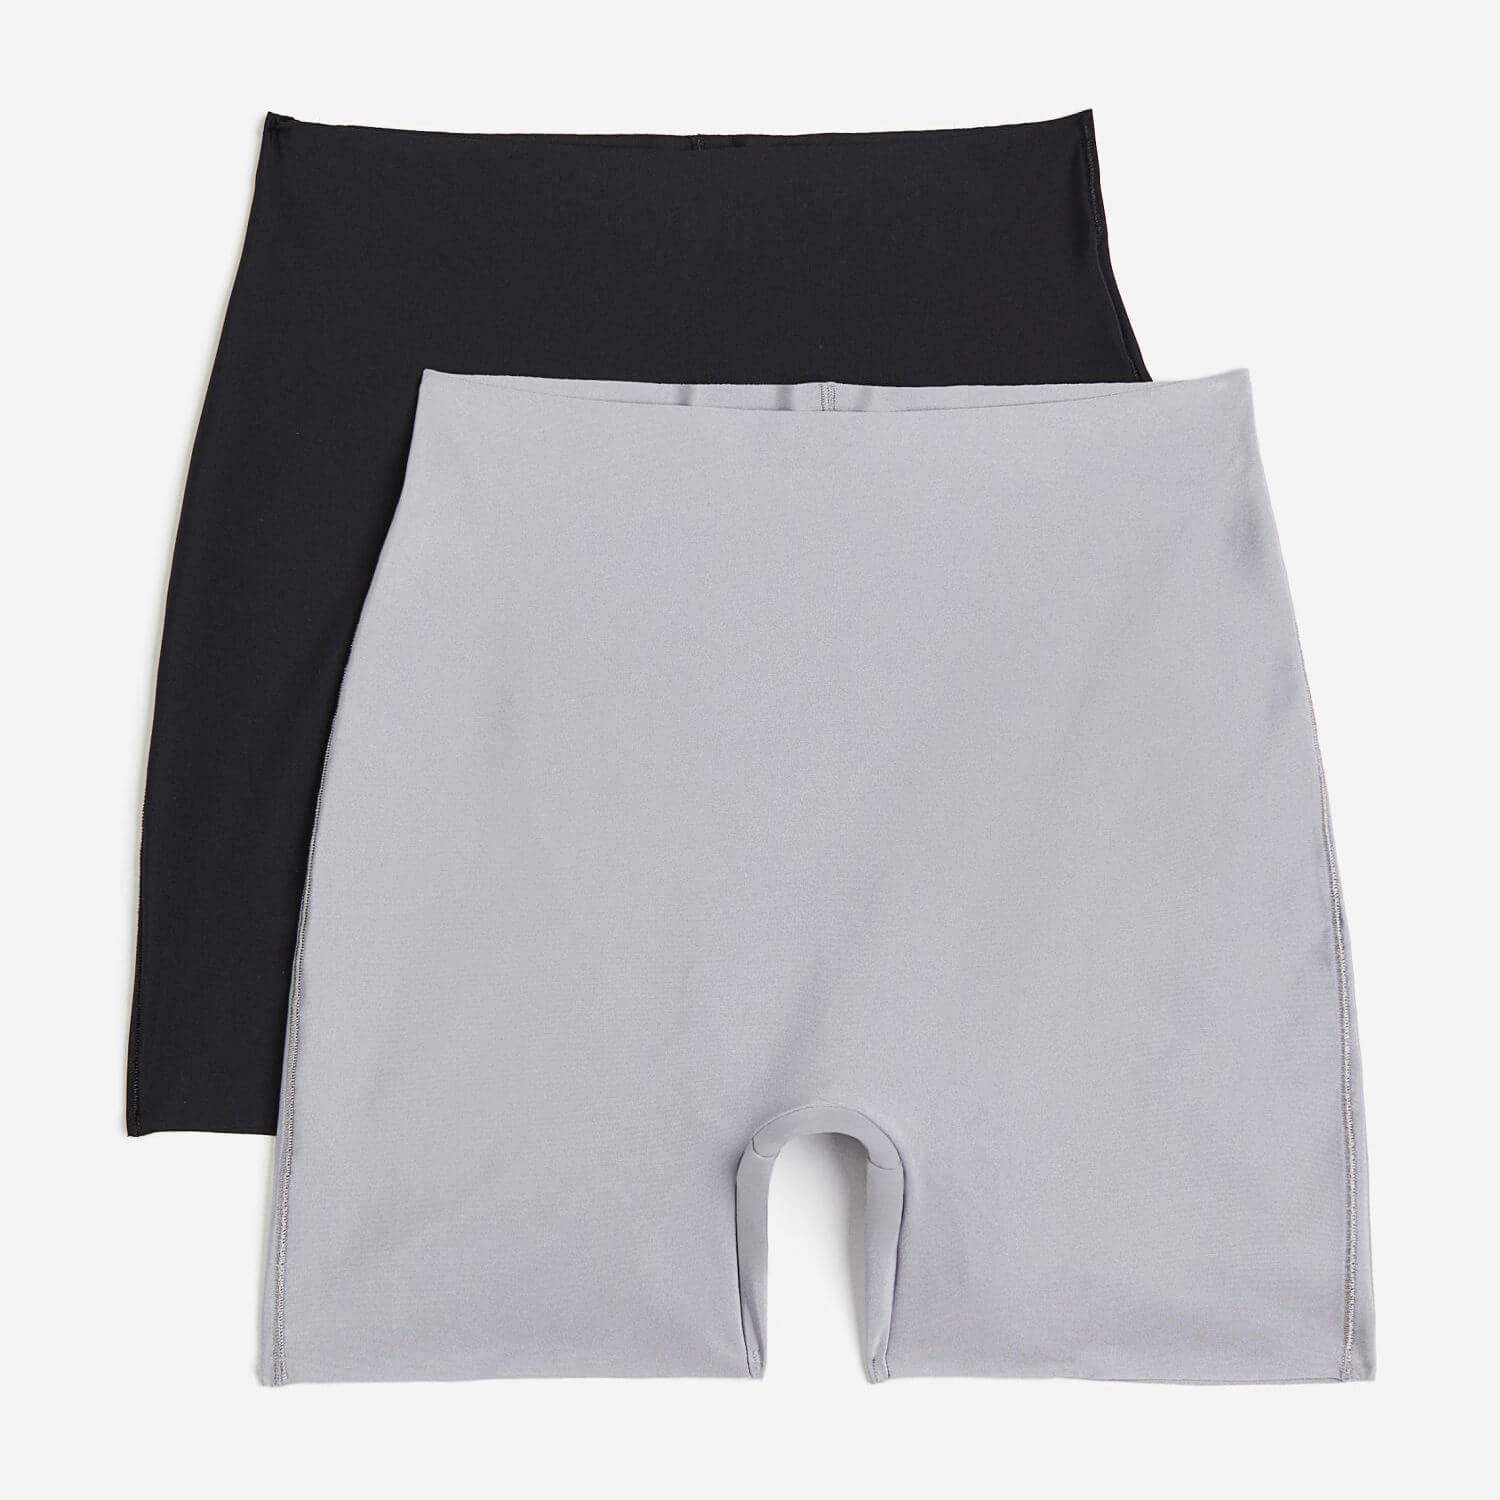 Комплект моделирующих шорт H&M Light, 2 пары, серый/черный